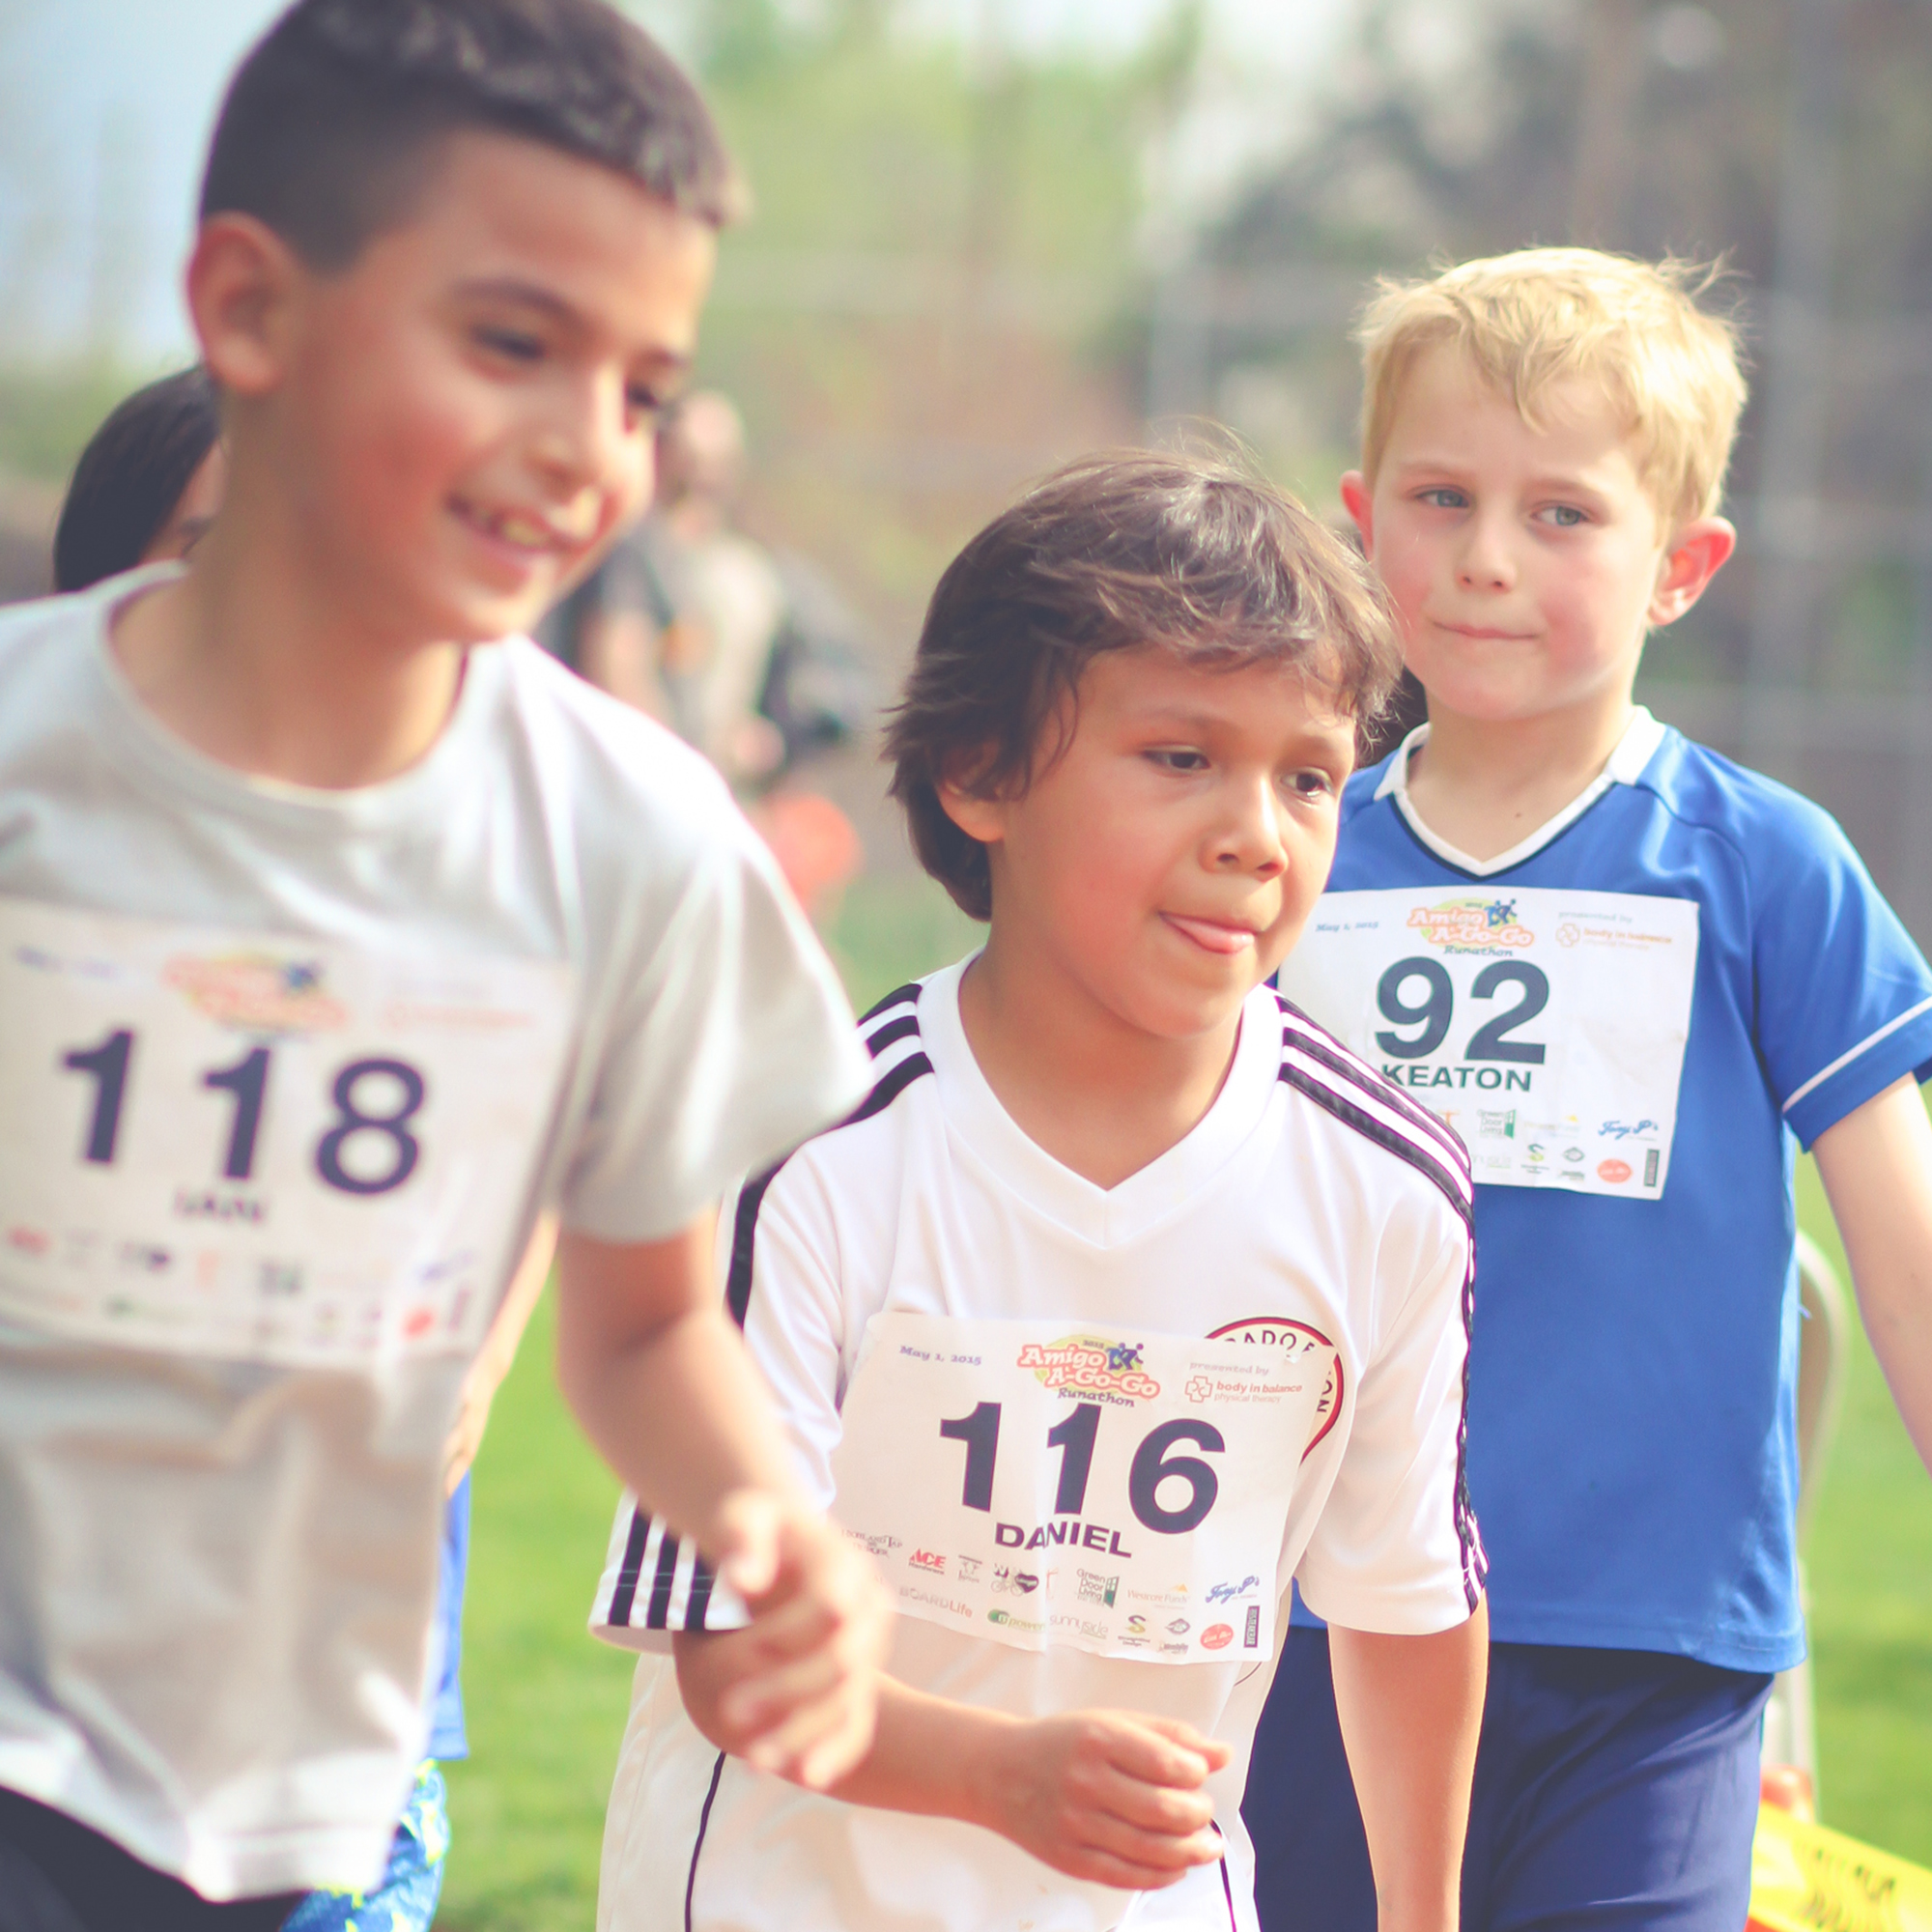 children running in a race